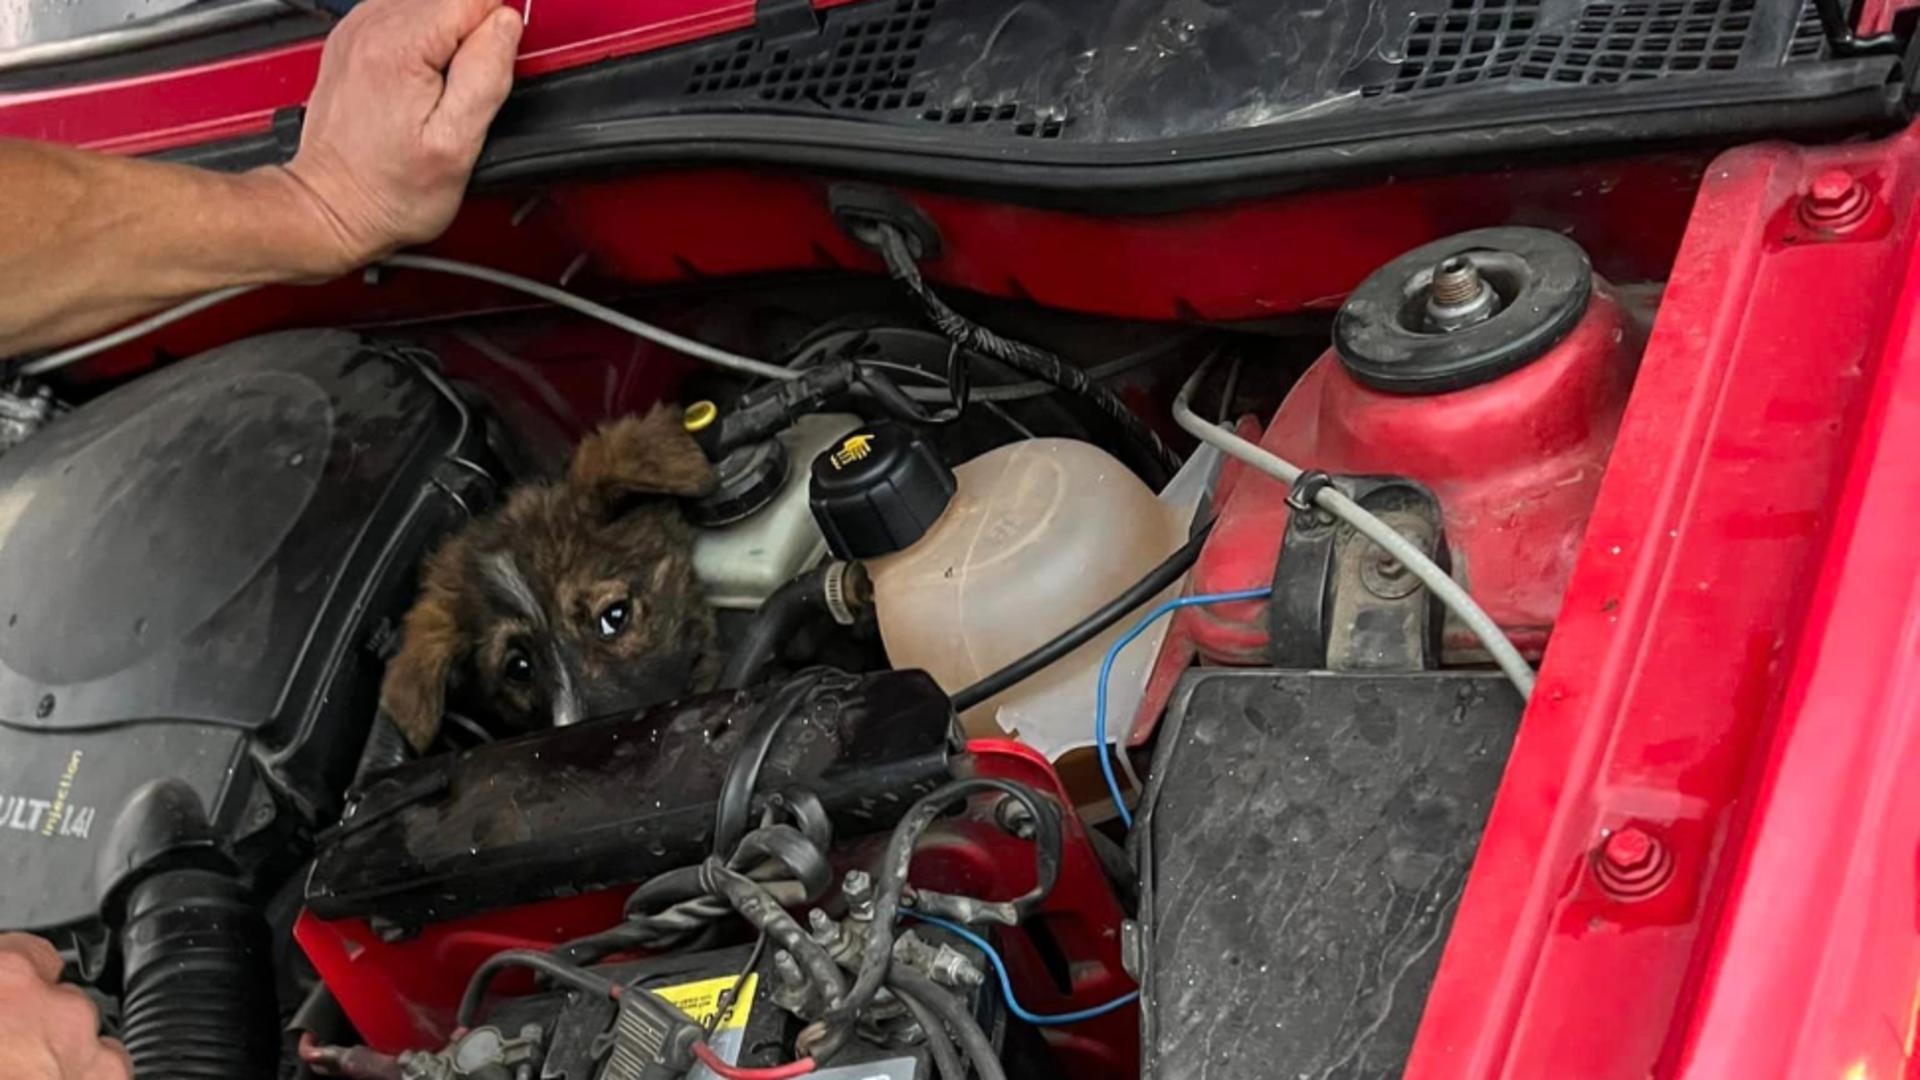 Pui de câine, ascuns la motorul mașinii. Surpriză de proporții pentru șofer: “100 km parcurși cu el sub capotă” – VIDEO